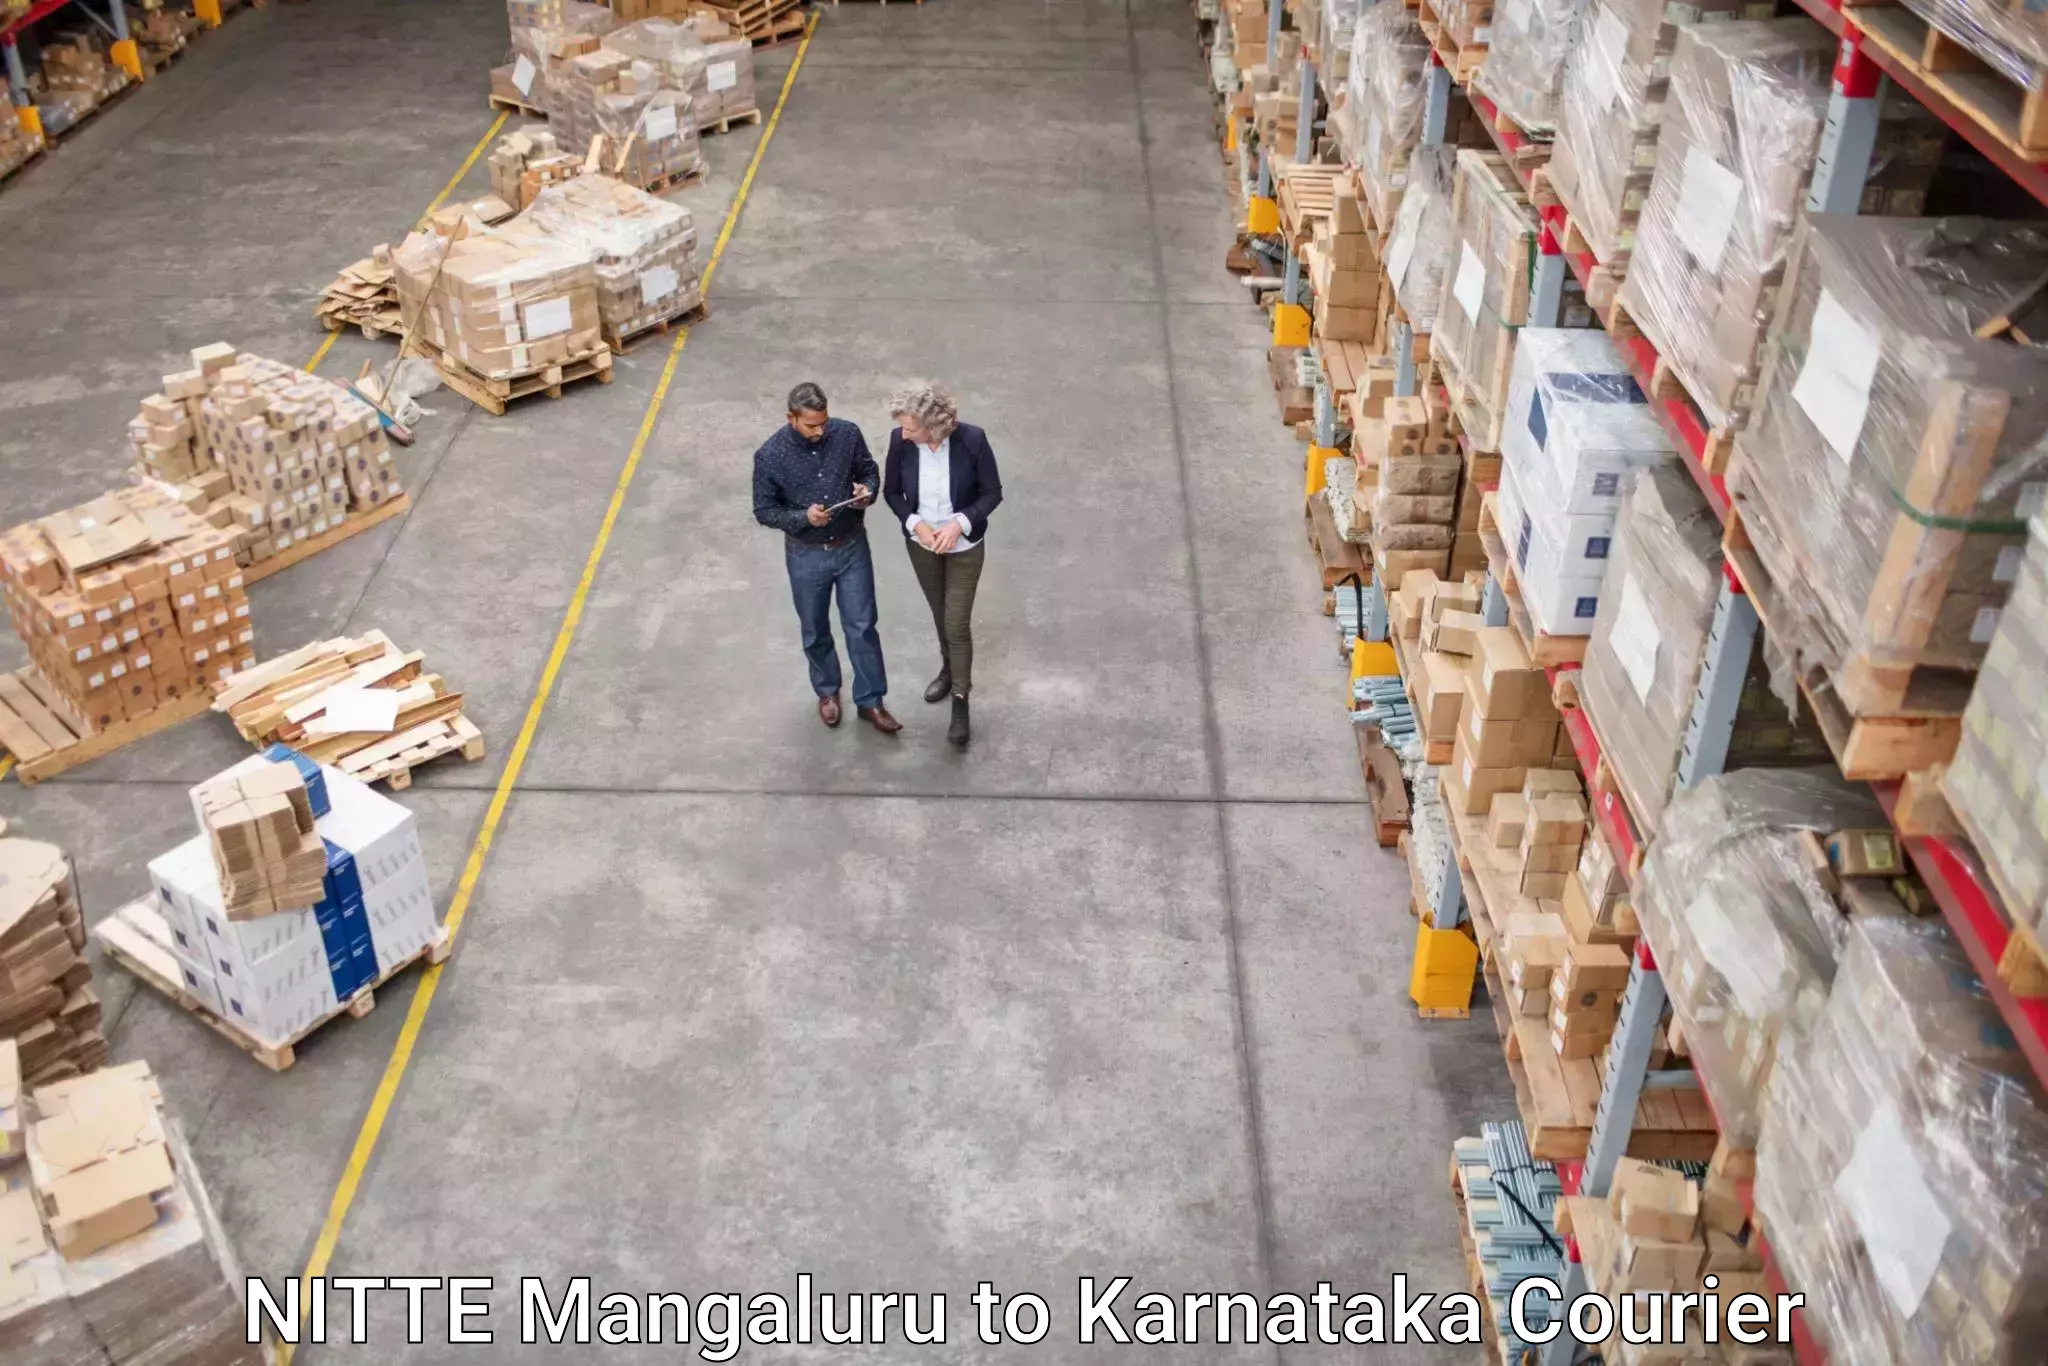 On-demand shipping options NITTE Mangaluru to Chikkanayakanahalli